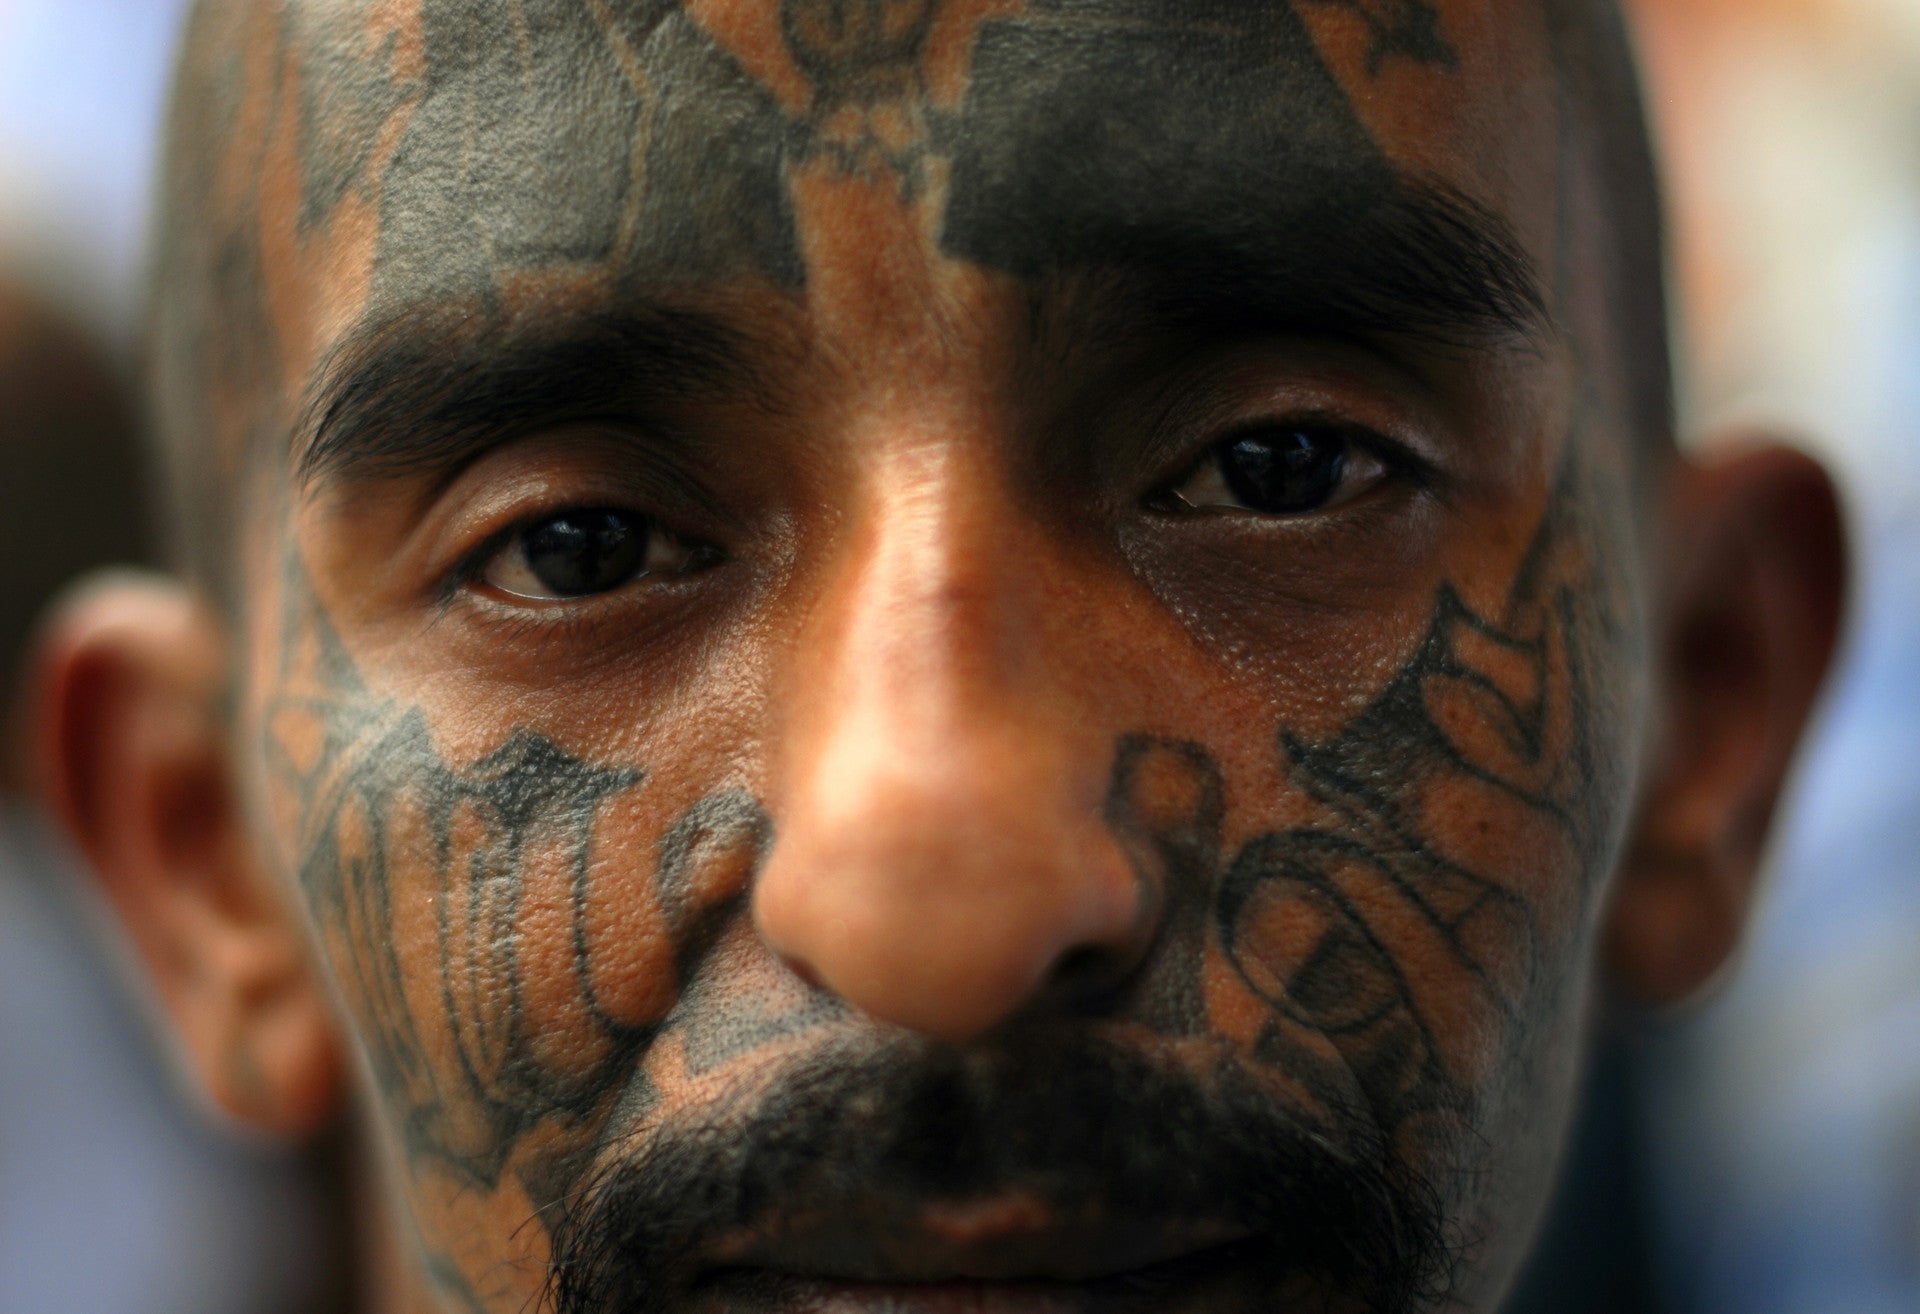 Un miembro de la mara Salvatrucha posa en la prisión de Ciudad de Barrios, en El Salvador.